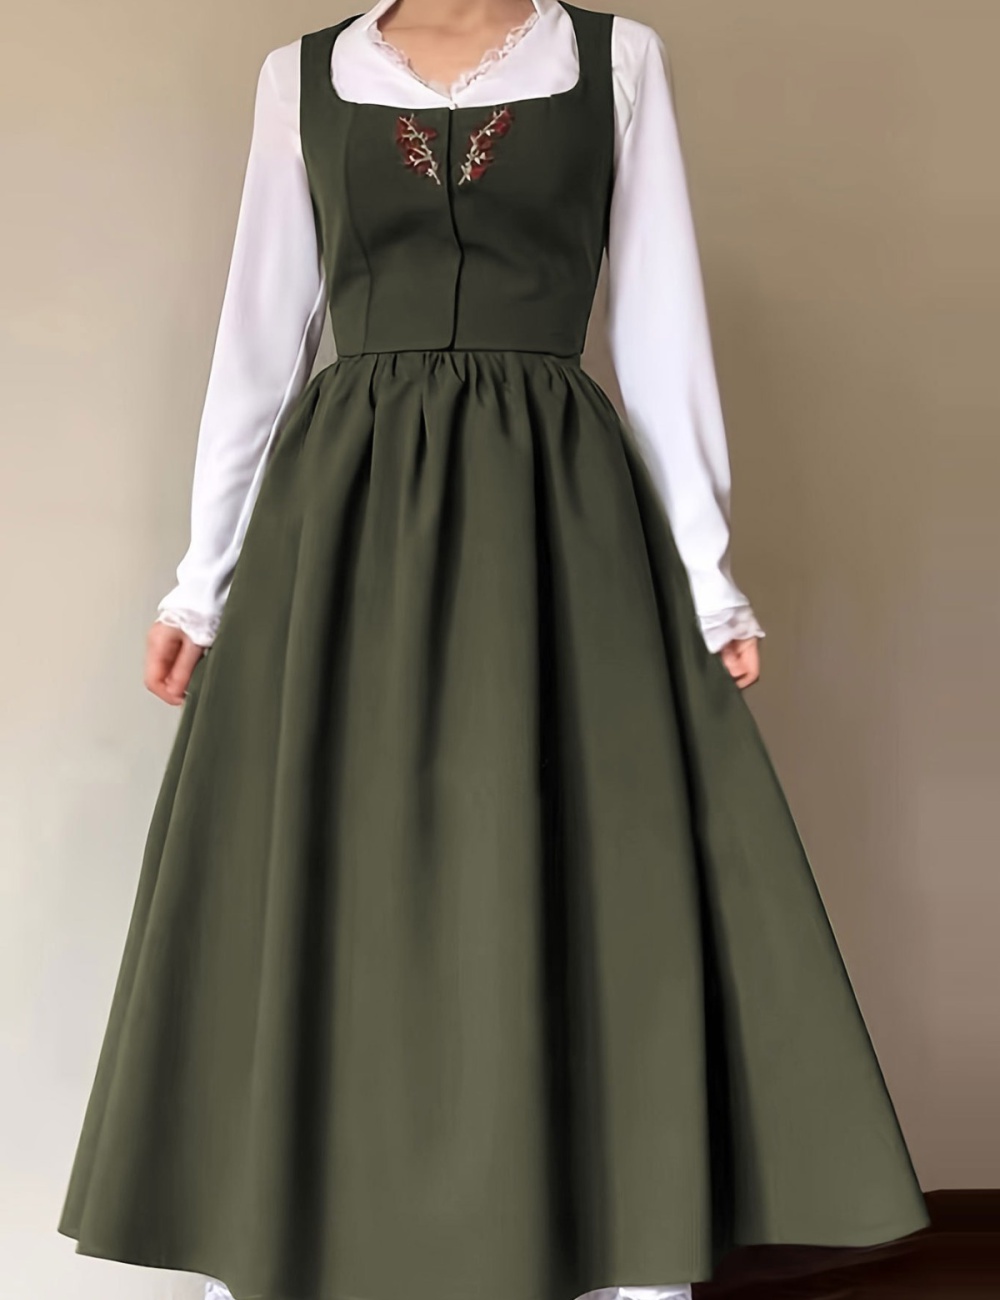 High waist dress embroidery sleeveless dress for women